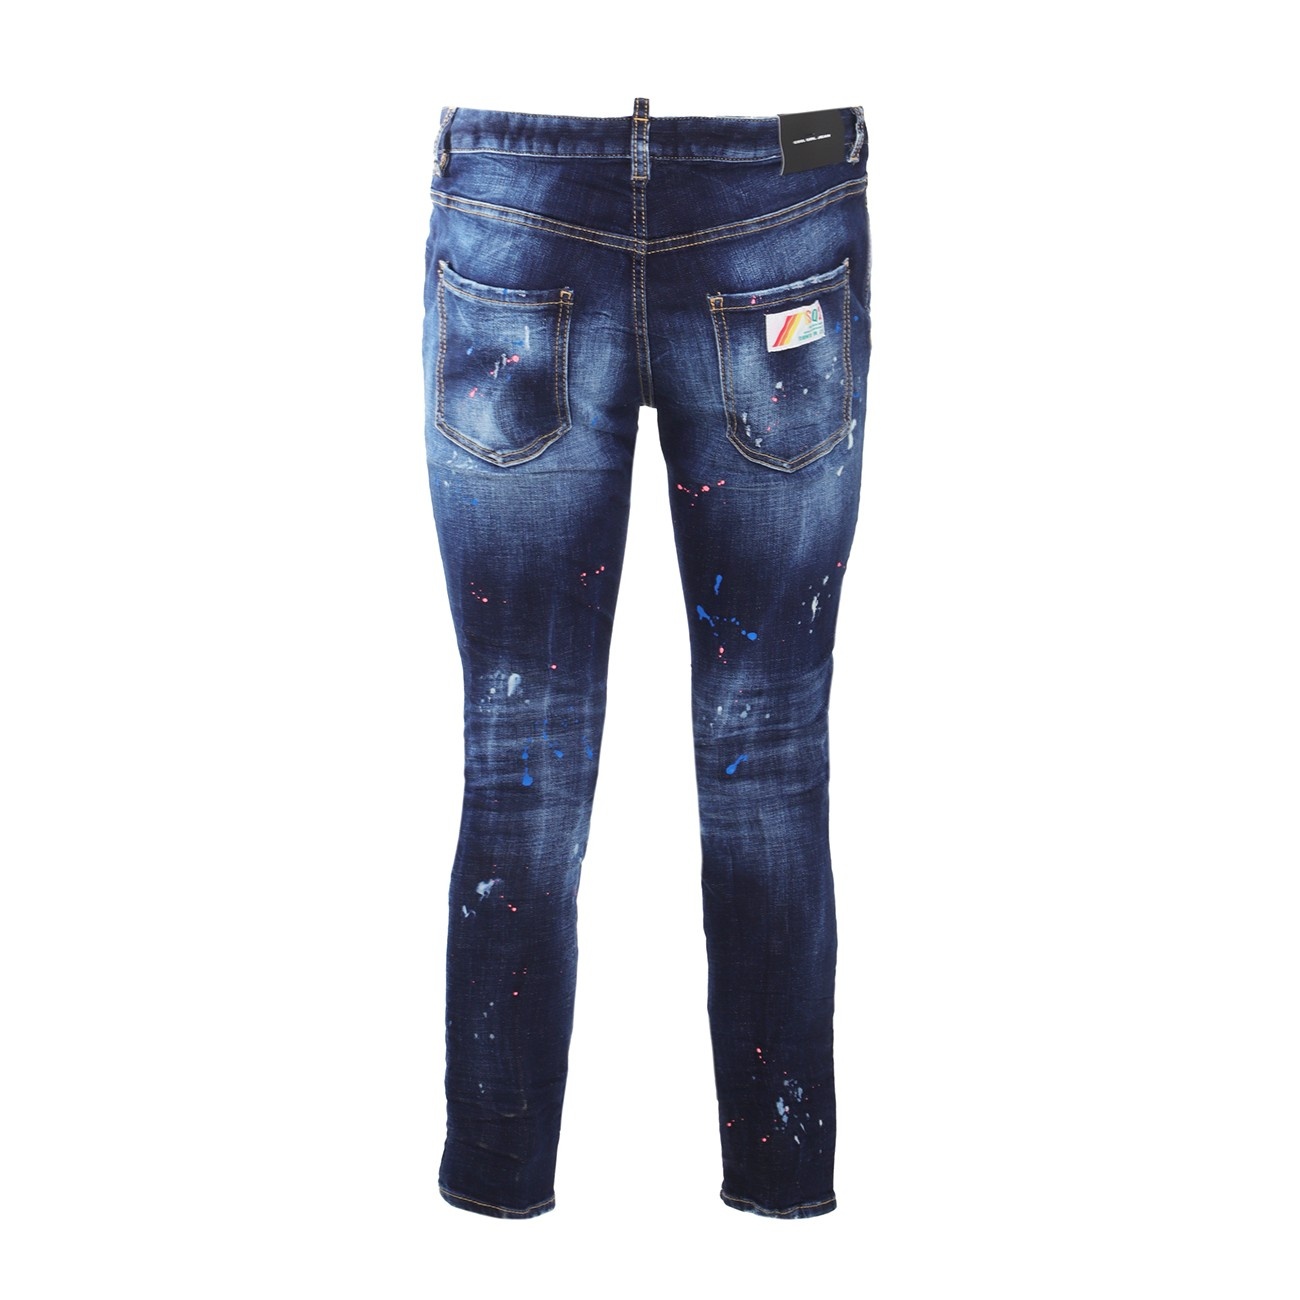 blue cotton jeans - 2